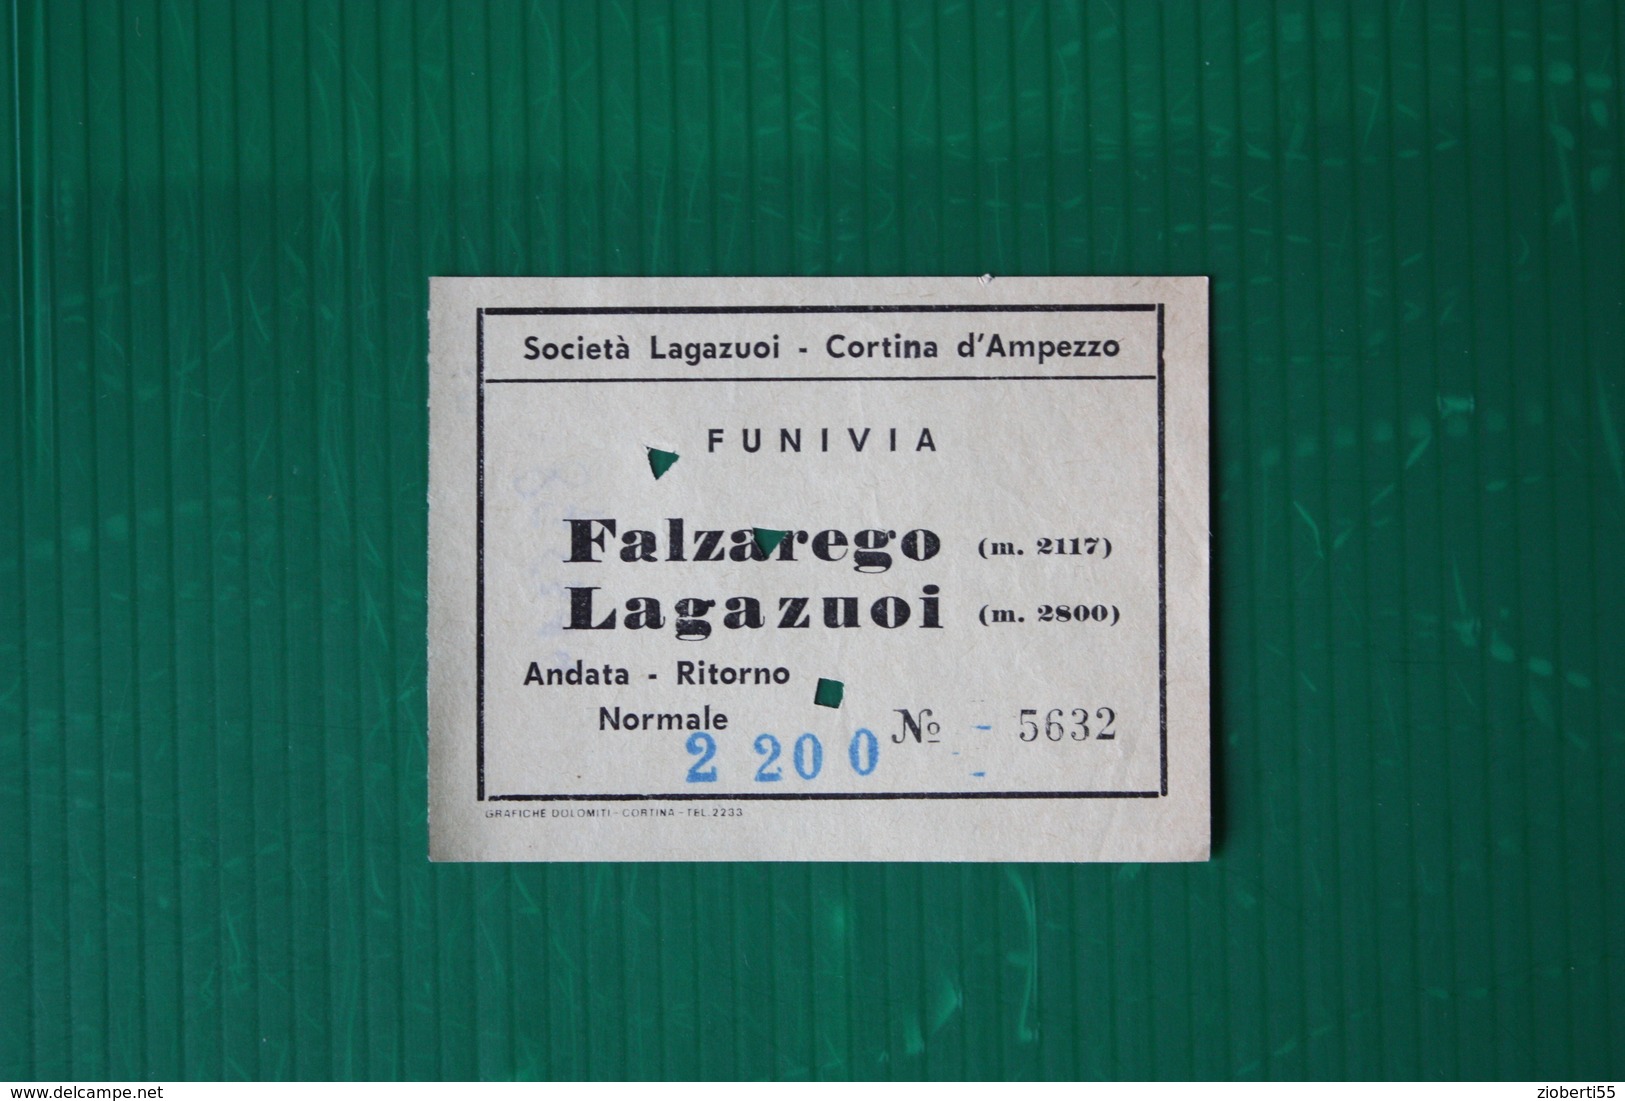 CORTINA D'AMPEZZO - FUNIVIA FALZAREGO-LAGAZUOI - 1969 - Sports D'hiver